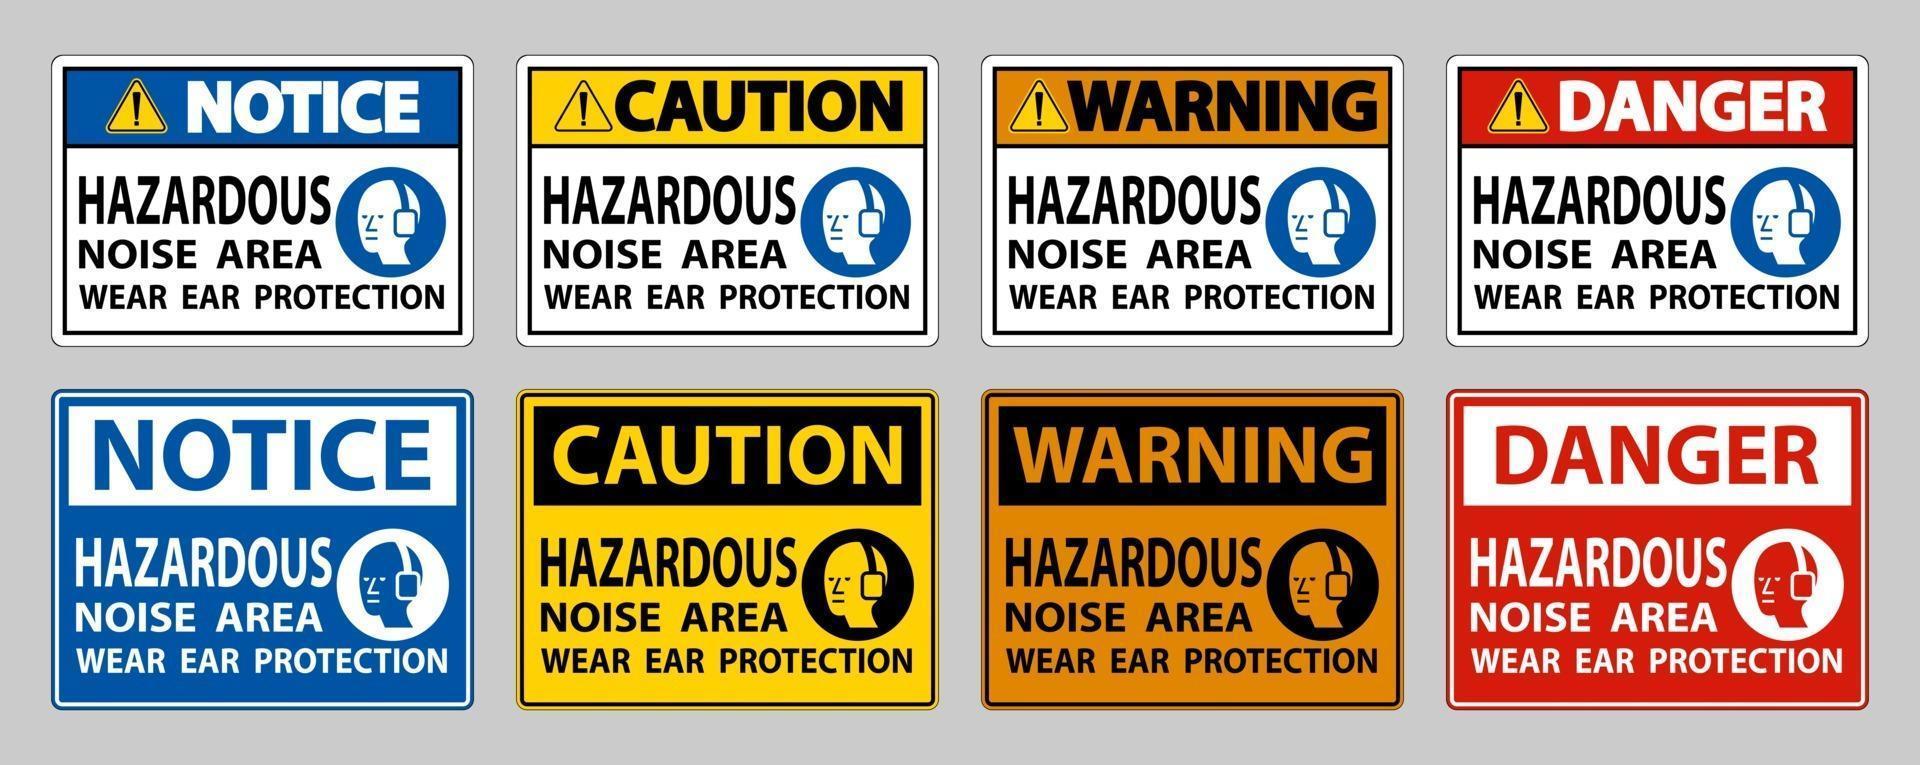 zone de bruit dangereux porter une protection auditive sur fond blanc vecteur